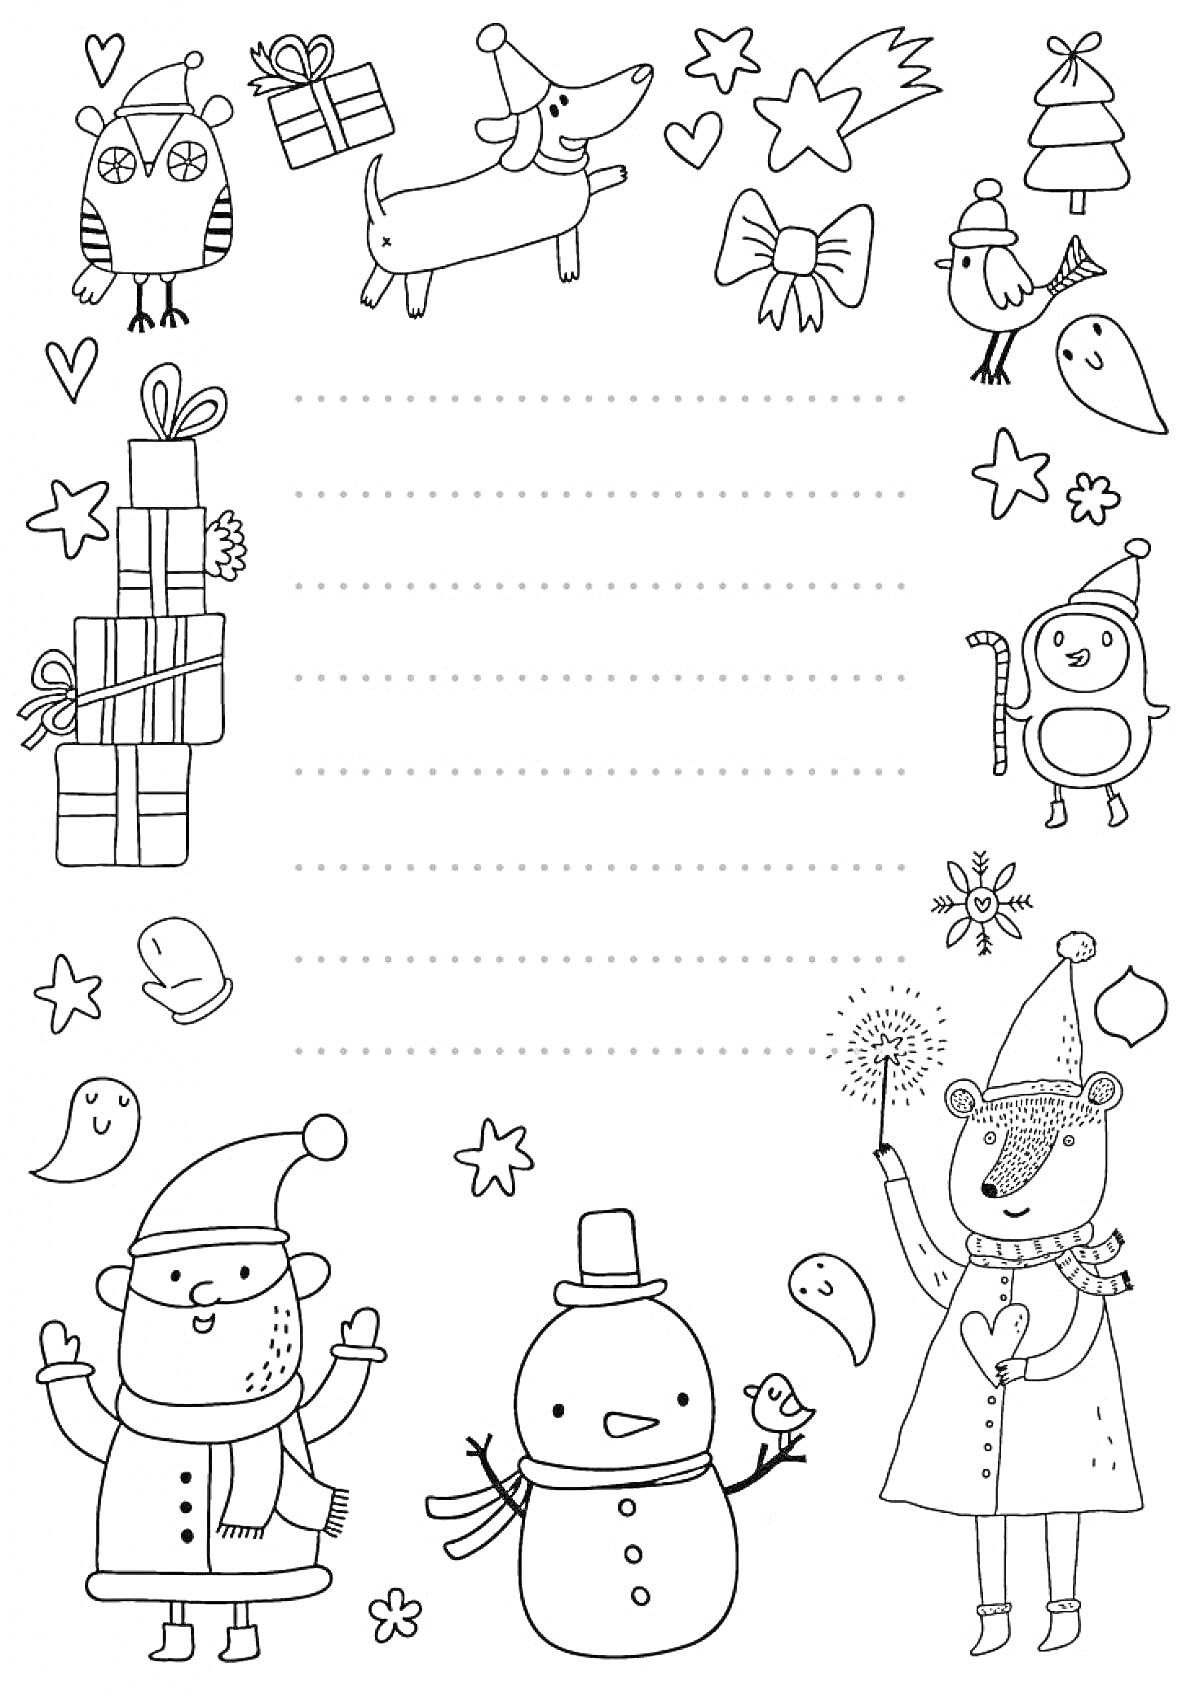 Письмо Деду Морозу с подарками, совой, собакой, сердечками, звездой, елкой, птицей, снеговиком, новогодними персонажами и фигурками